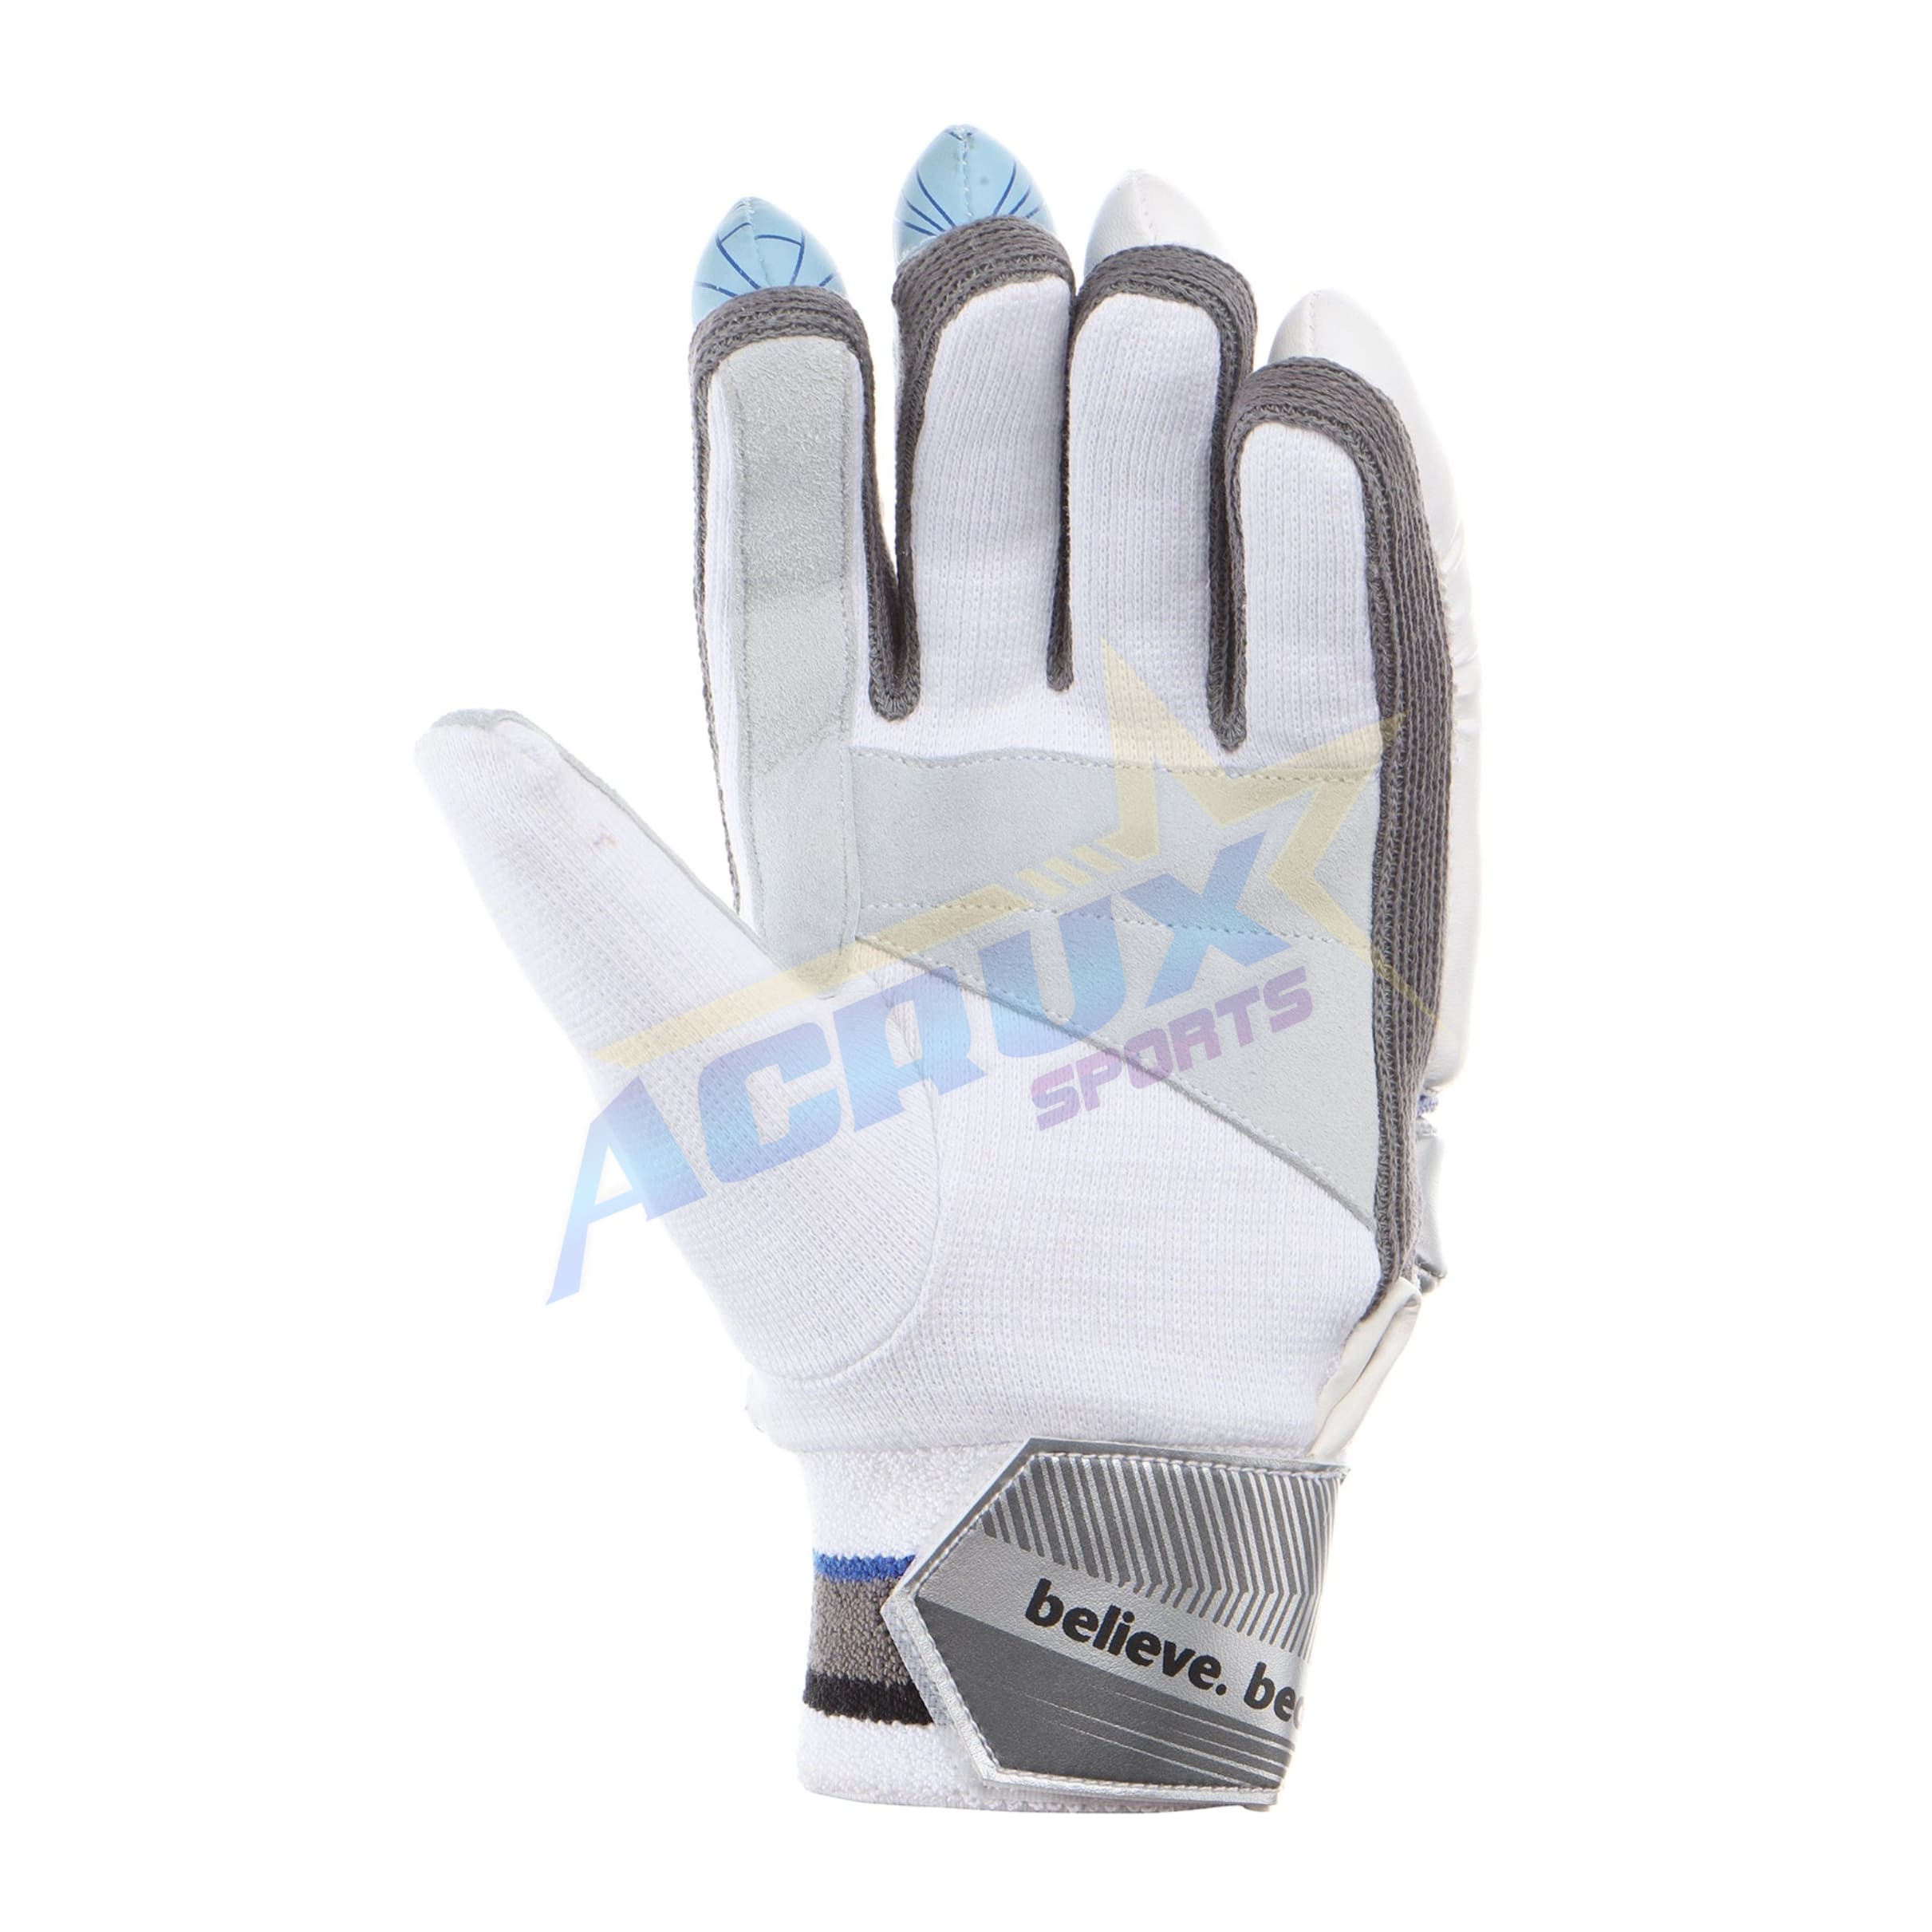 SG Club Cricket Batting Gloves